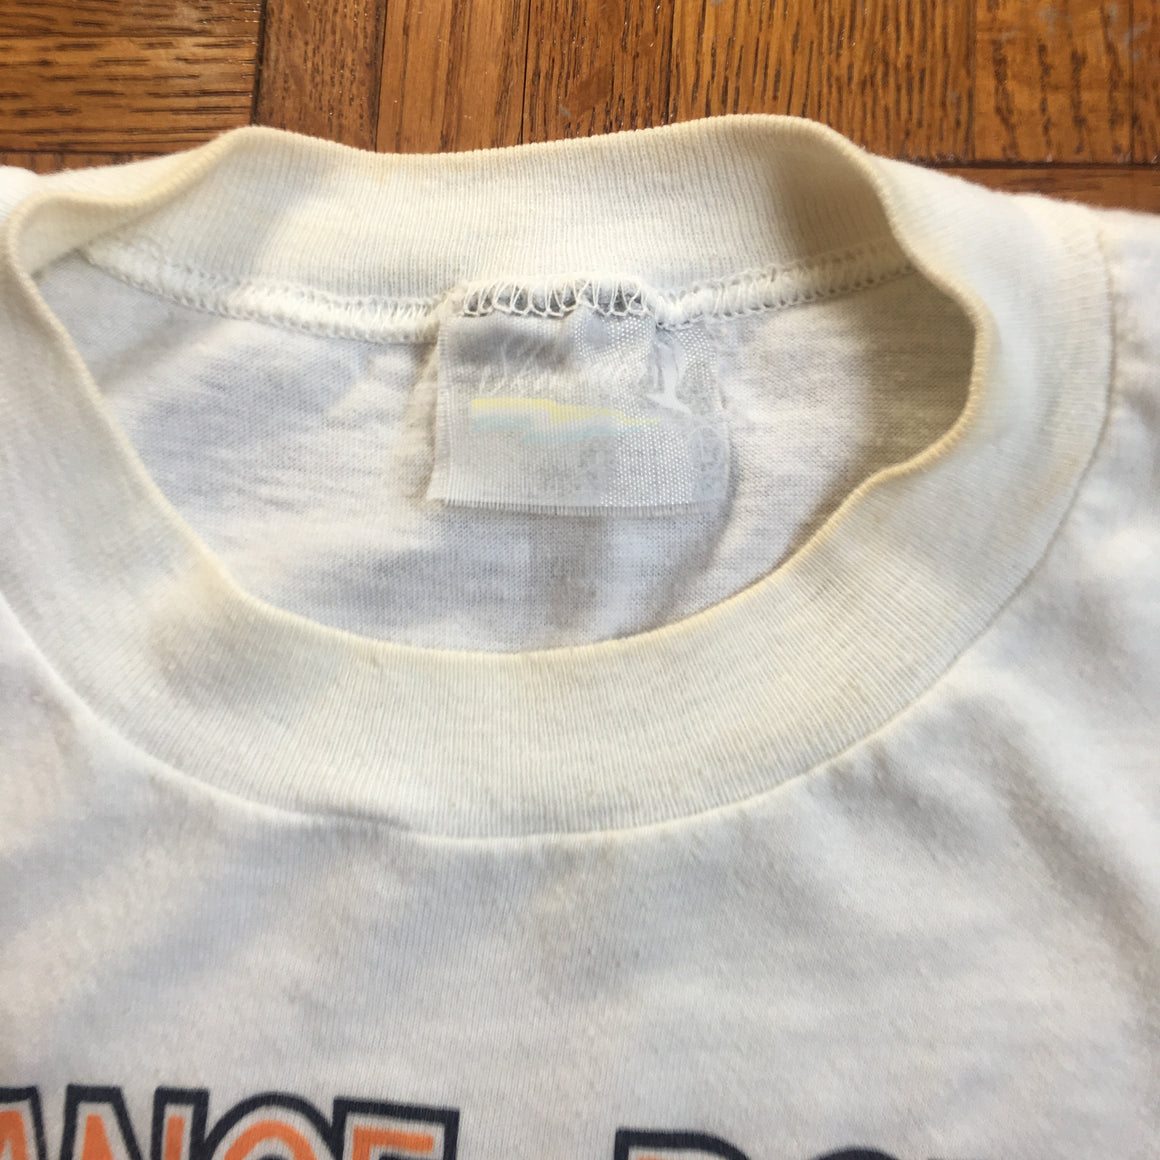 Penn State Orange Bowl 1986 shirt - L